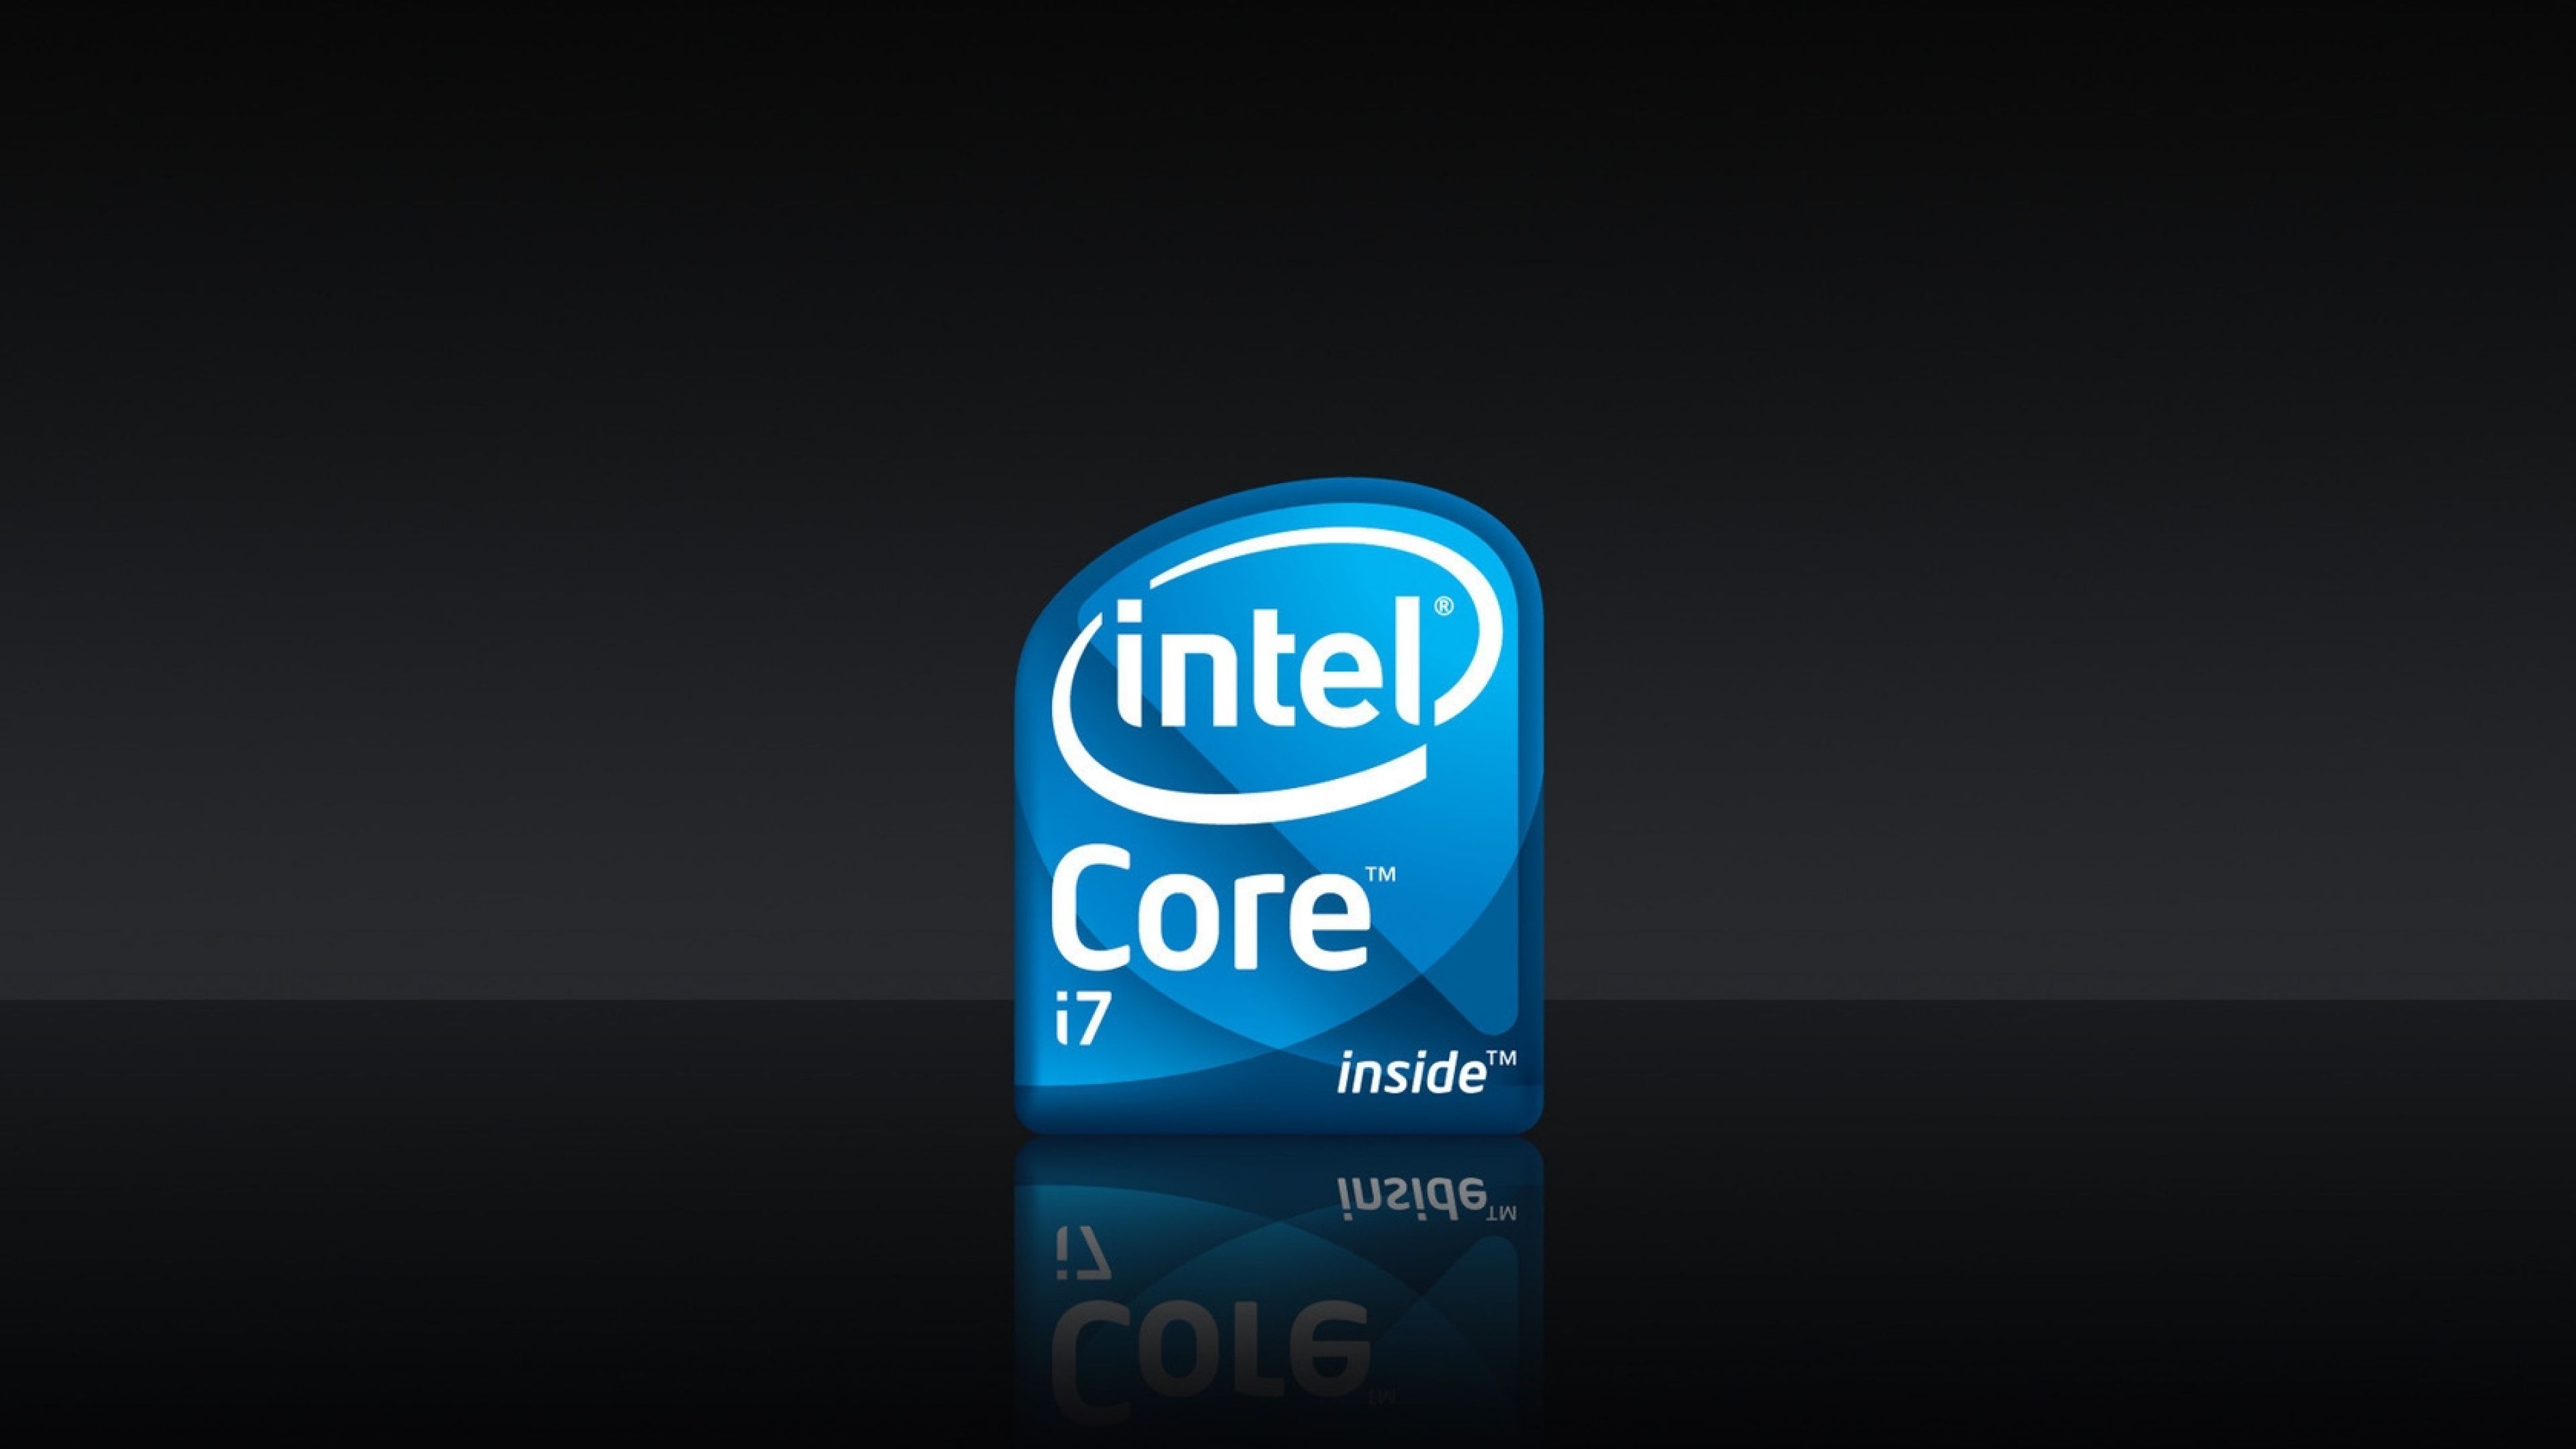 Intel Wallpapers 4k Hd Intel Backgrounds On Wallpaperbat